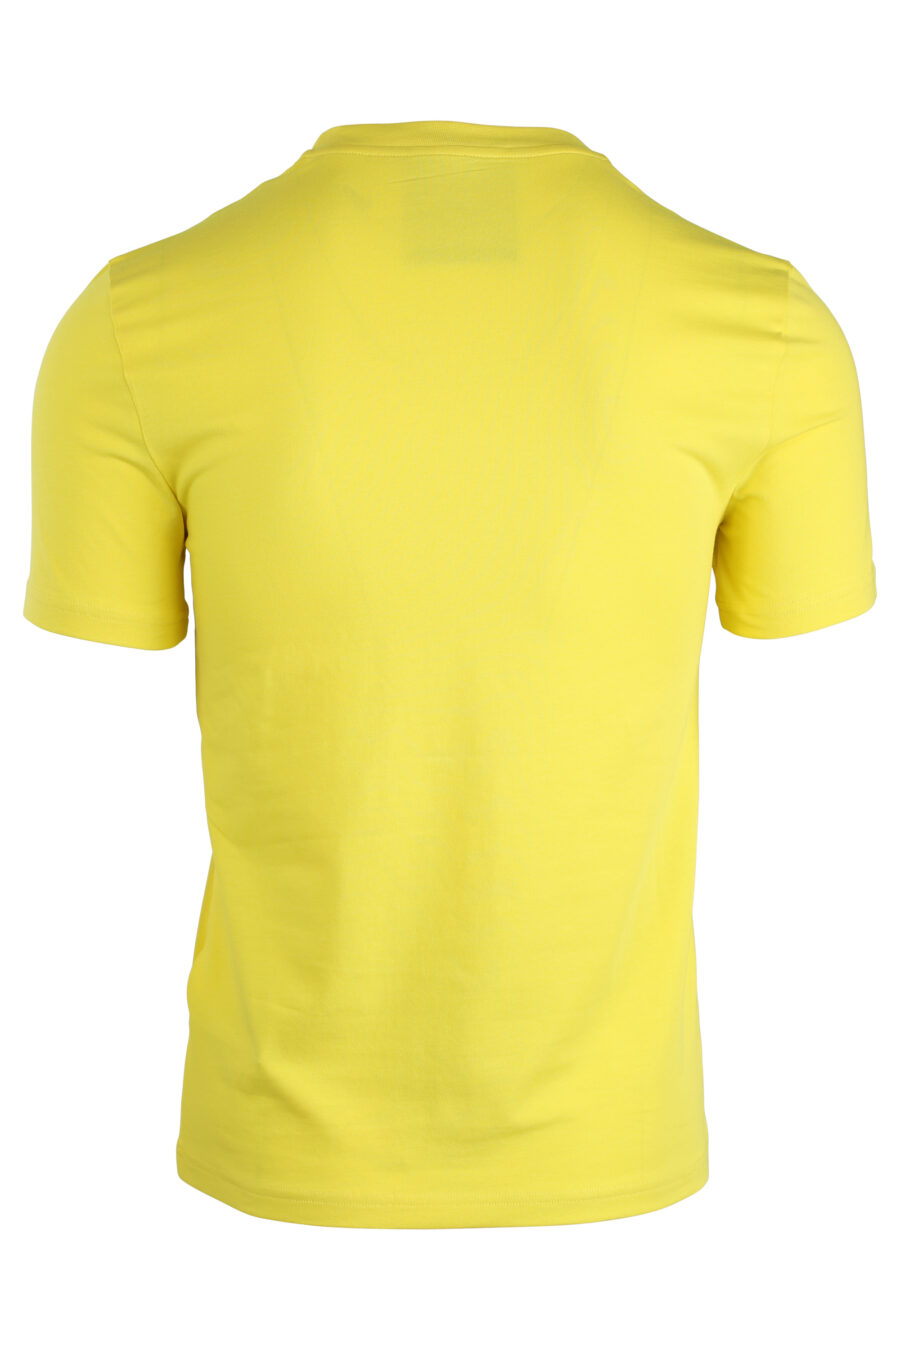 Camiseta amarilla con maxi logo doble "smiley" - IMG 1675